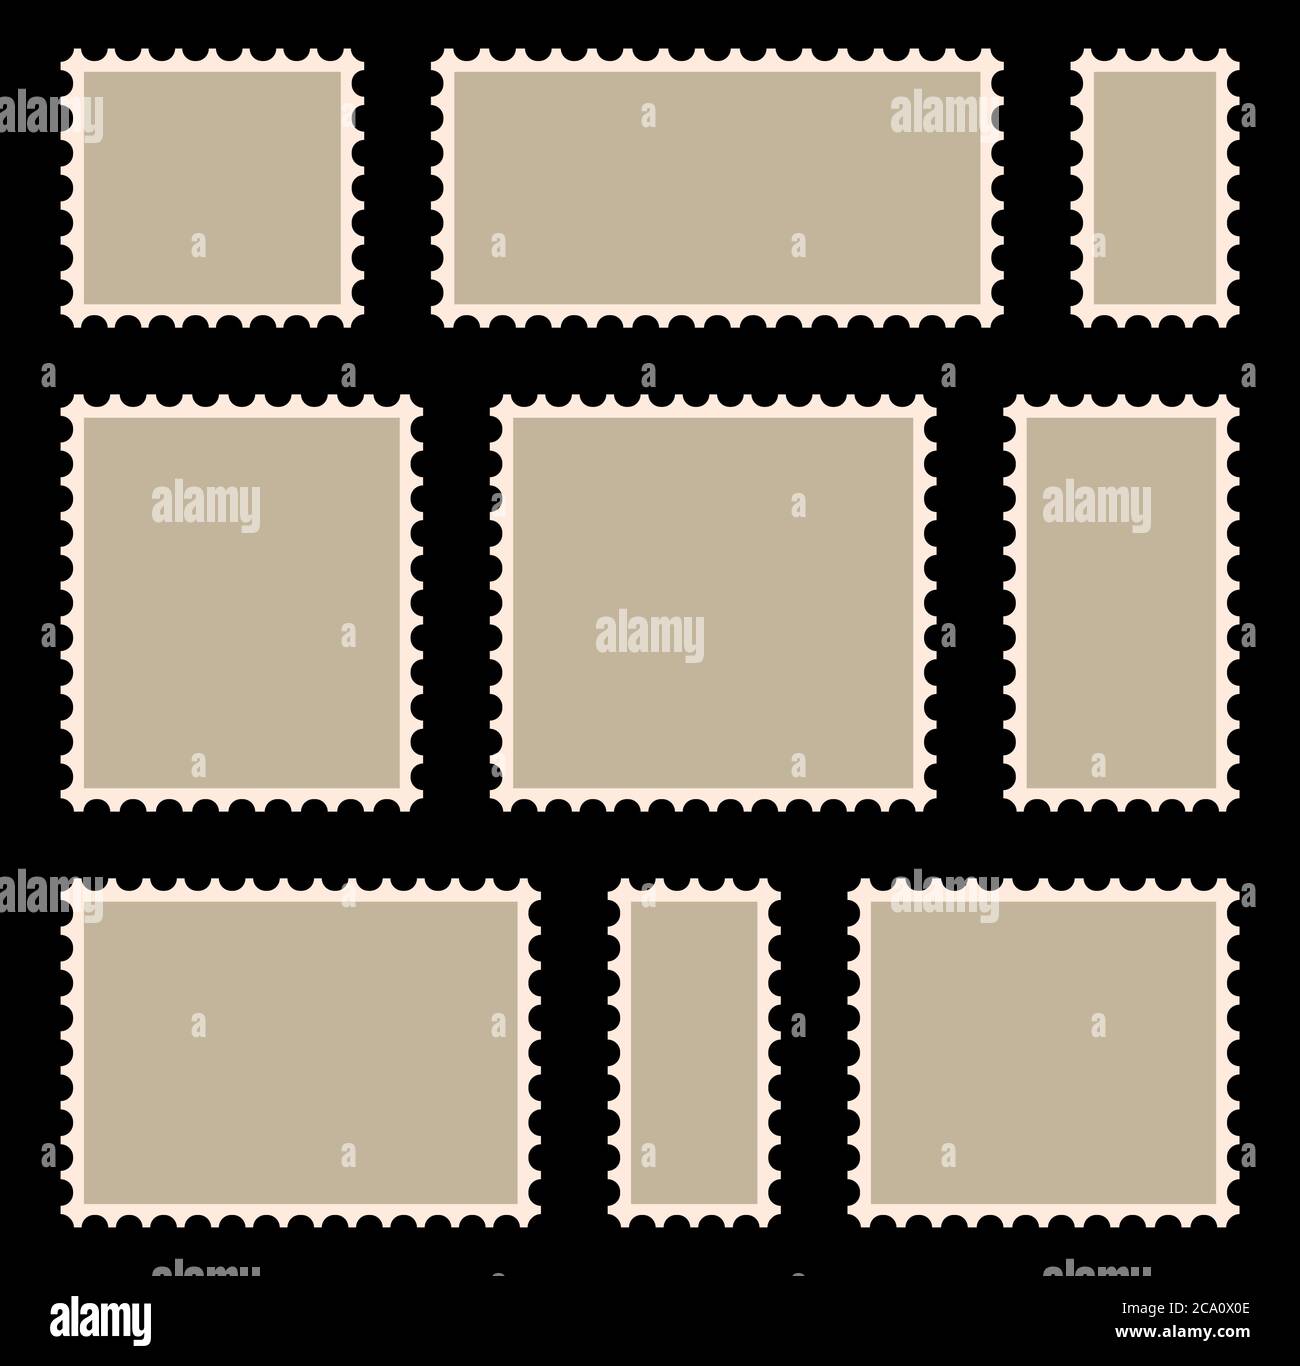 Poststempelrahmen oder Rahmen mit Copyspace. Leere, beige Briefmarkensammlung. Retro-Briefmarke mit perforiertem Rand. Clipart-Abbildung Stock Vektor